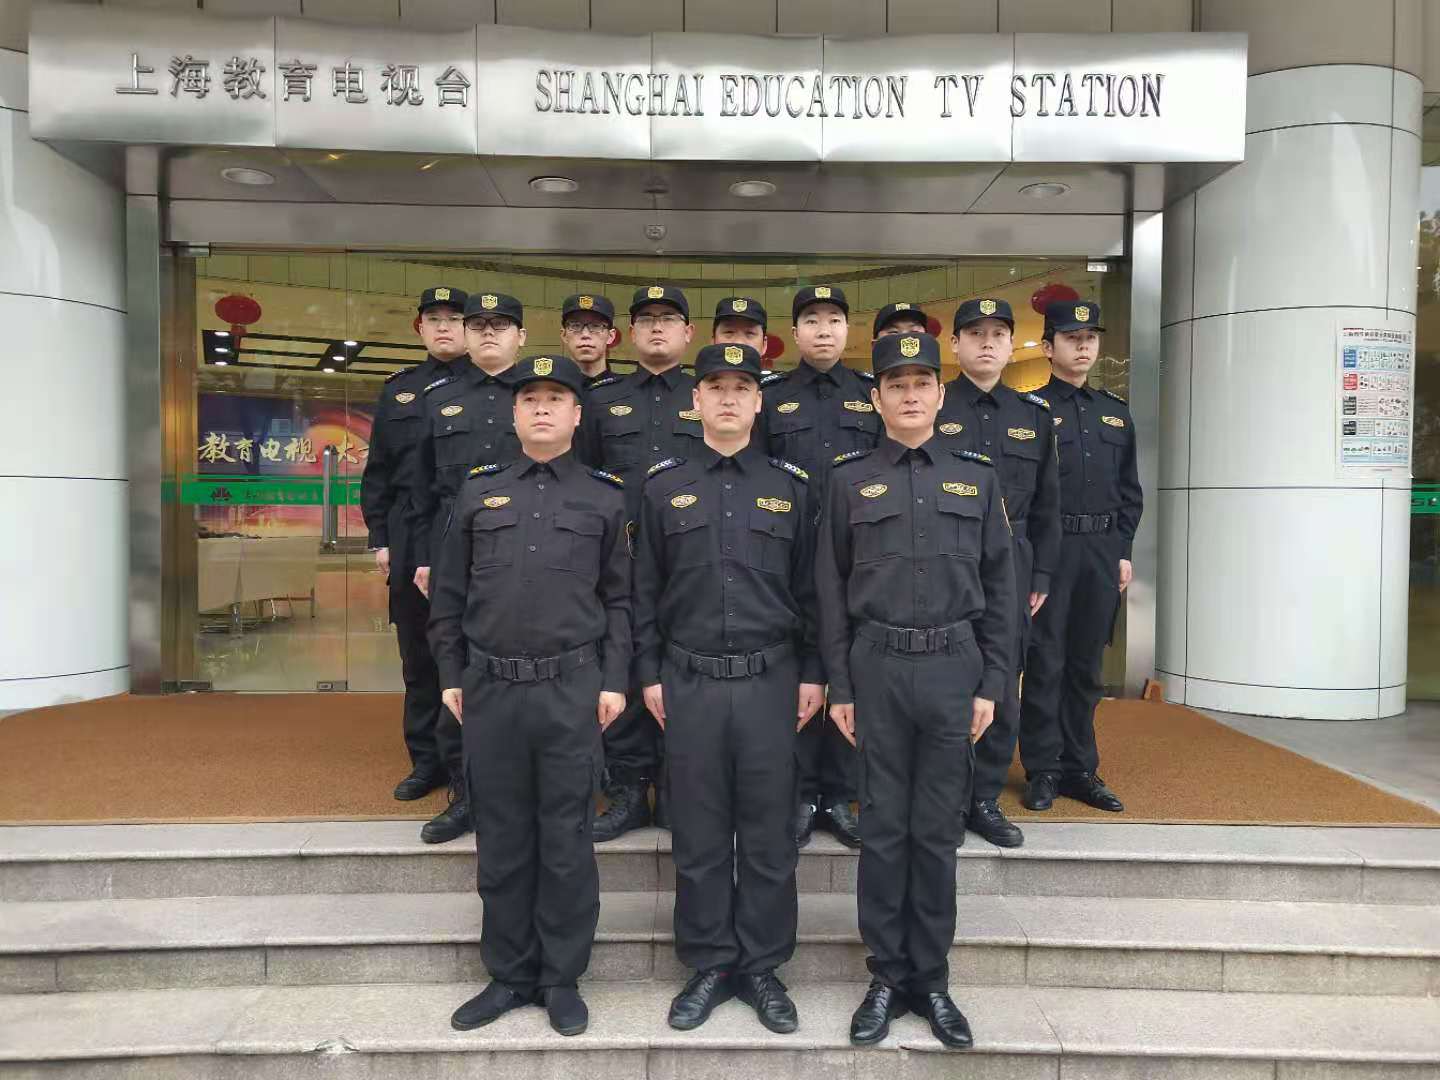 2020-11月之队-上海电视台保安队.jpg